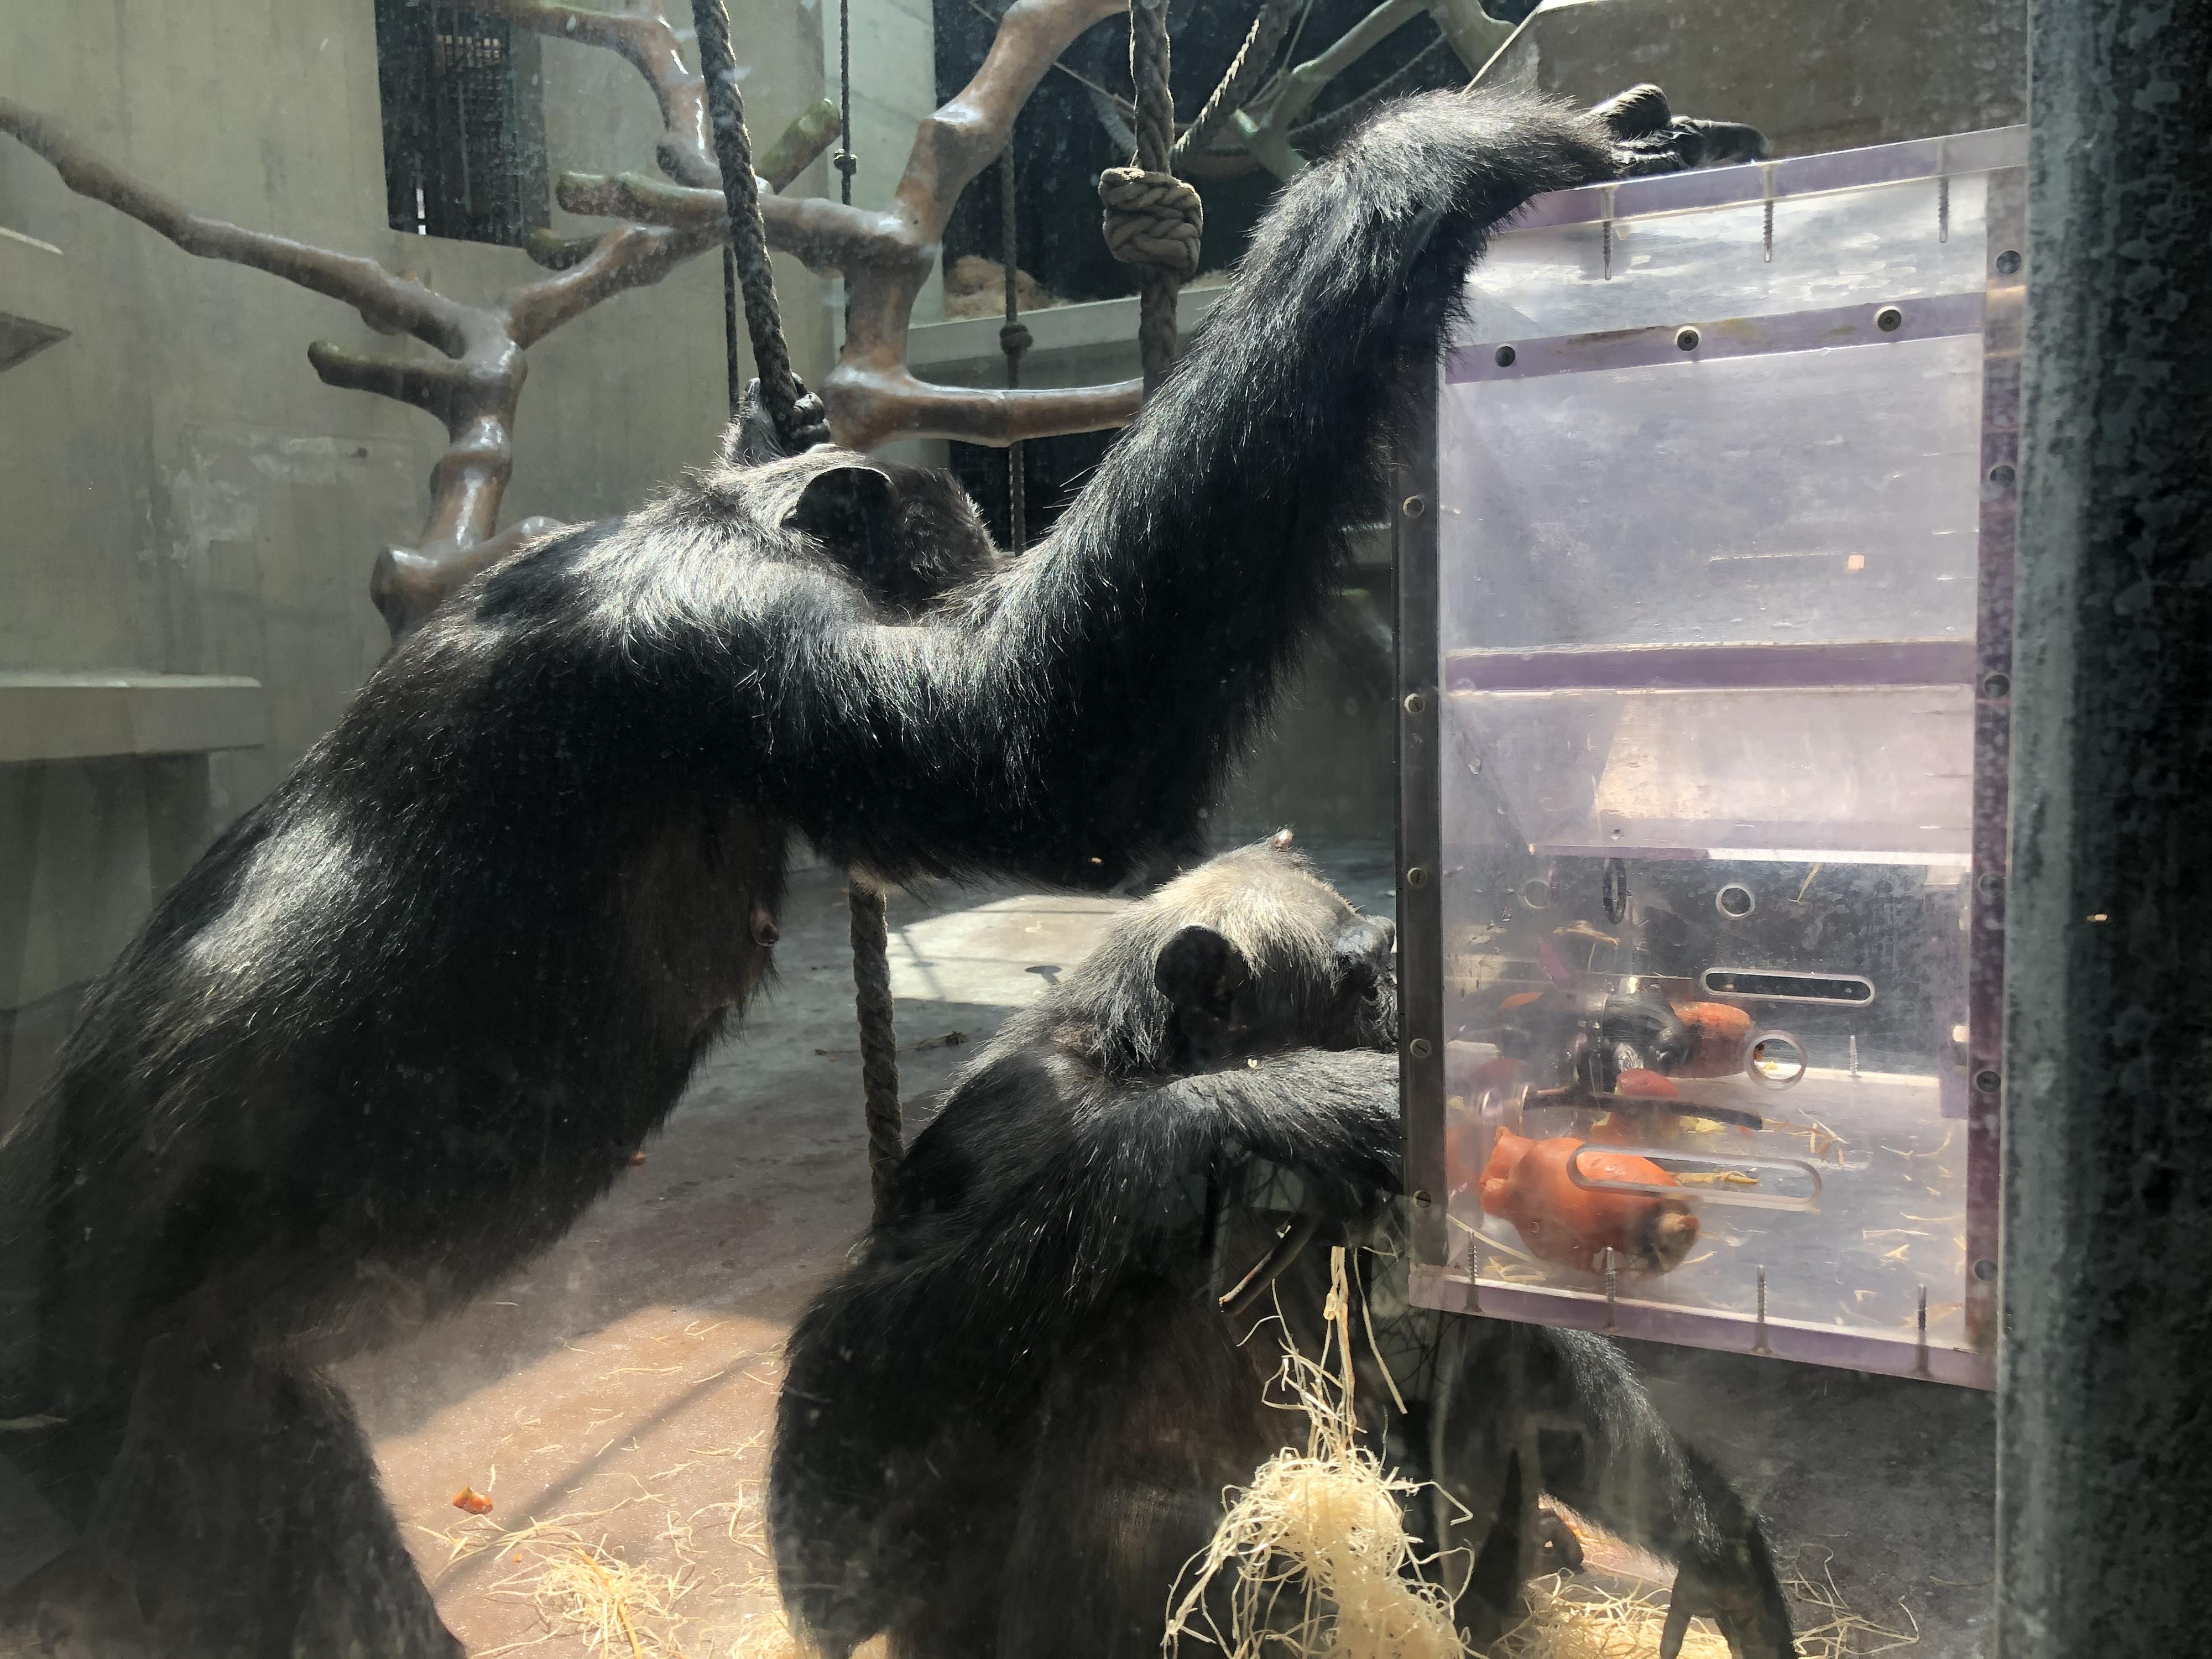 Une des activités proposées aux chimpanzés pour les occuper [P.W.]